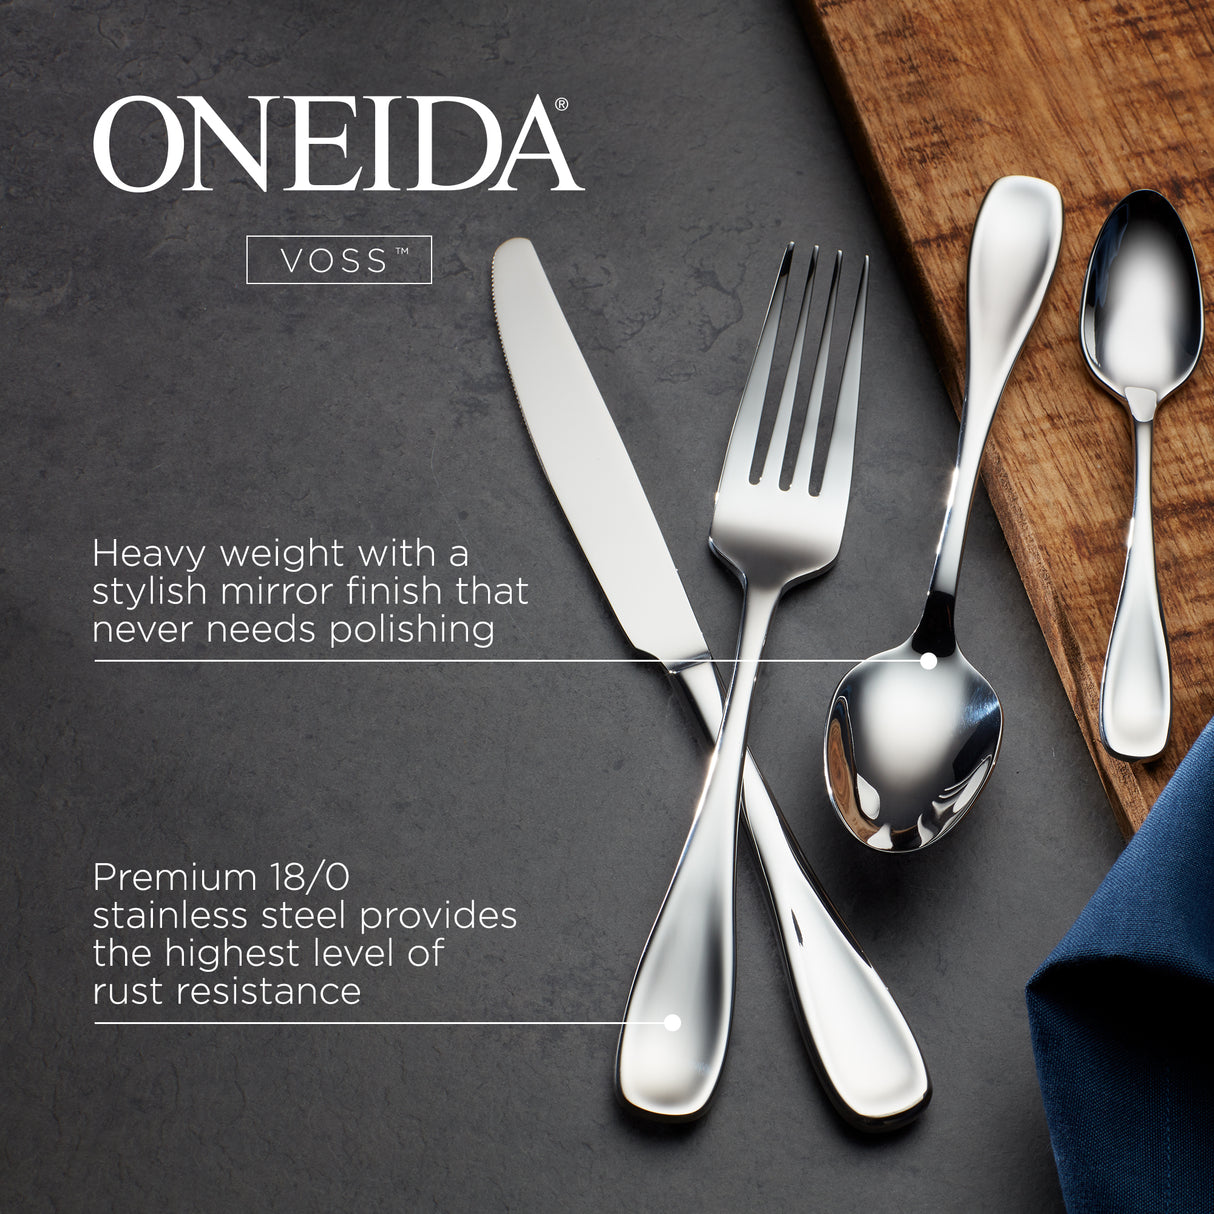 ONEIDA Voss Cutlery - 24 Piece Dinner Set for Six